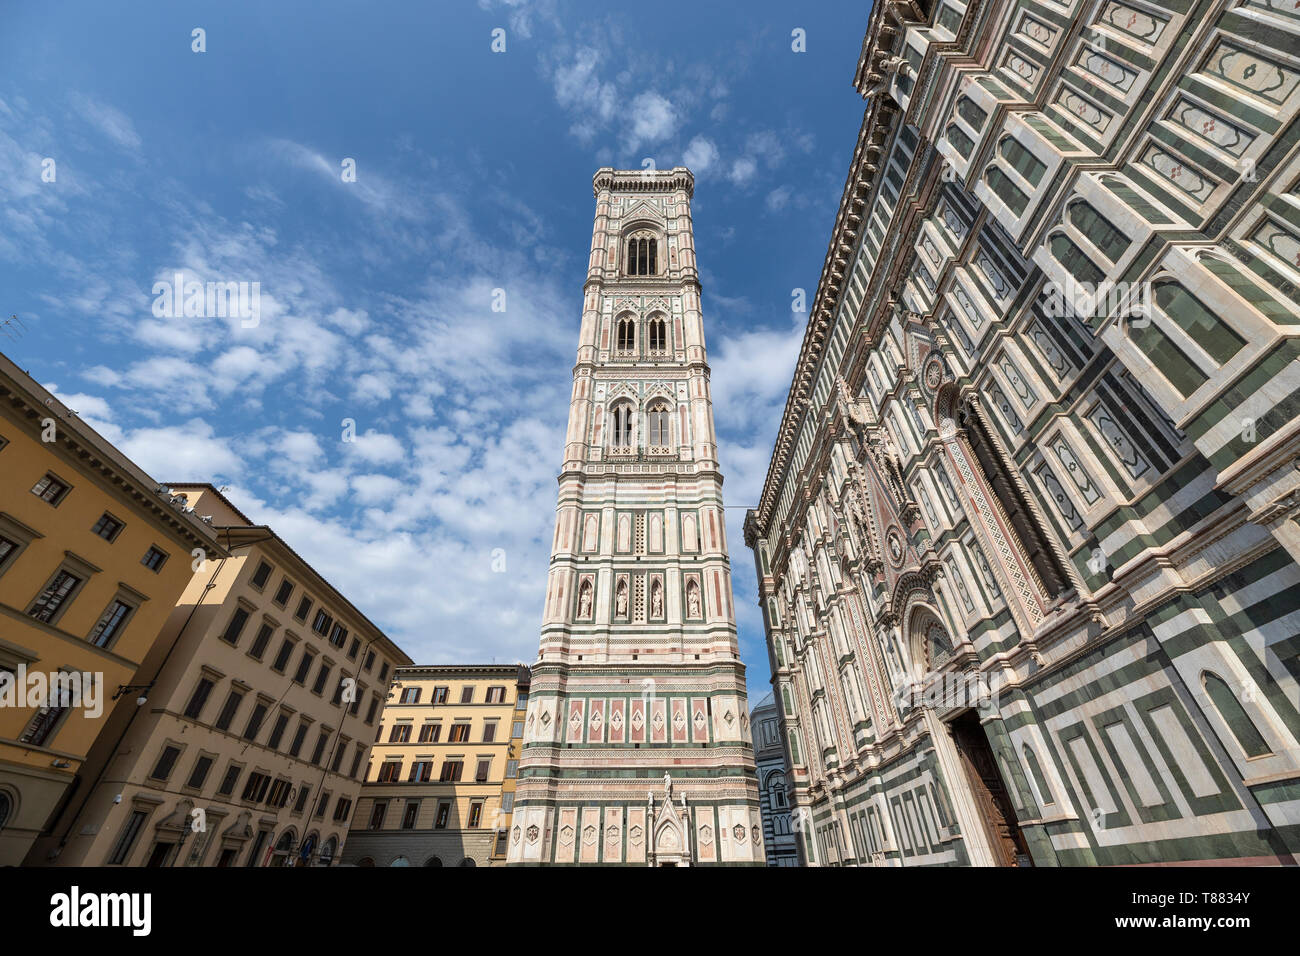 Le clocher de Giotto est le clocher de Santa Maria del Fiore, la cathédrale de Florence, et est situé sur la Piazza del Duomo. Banque D'Images